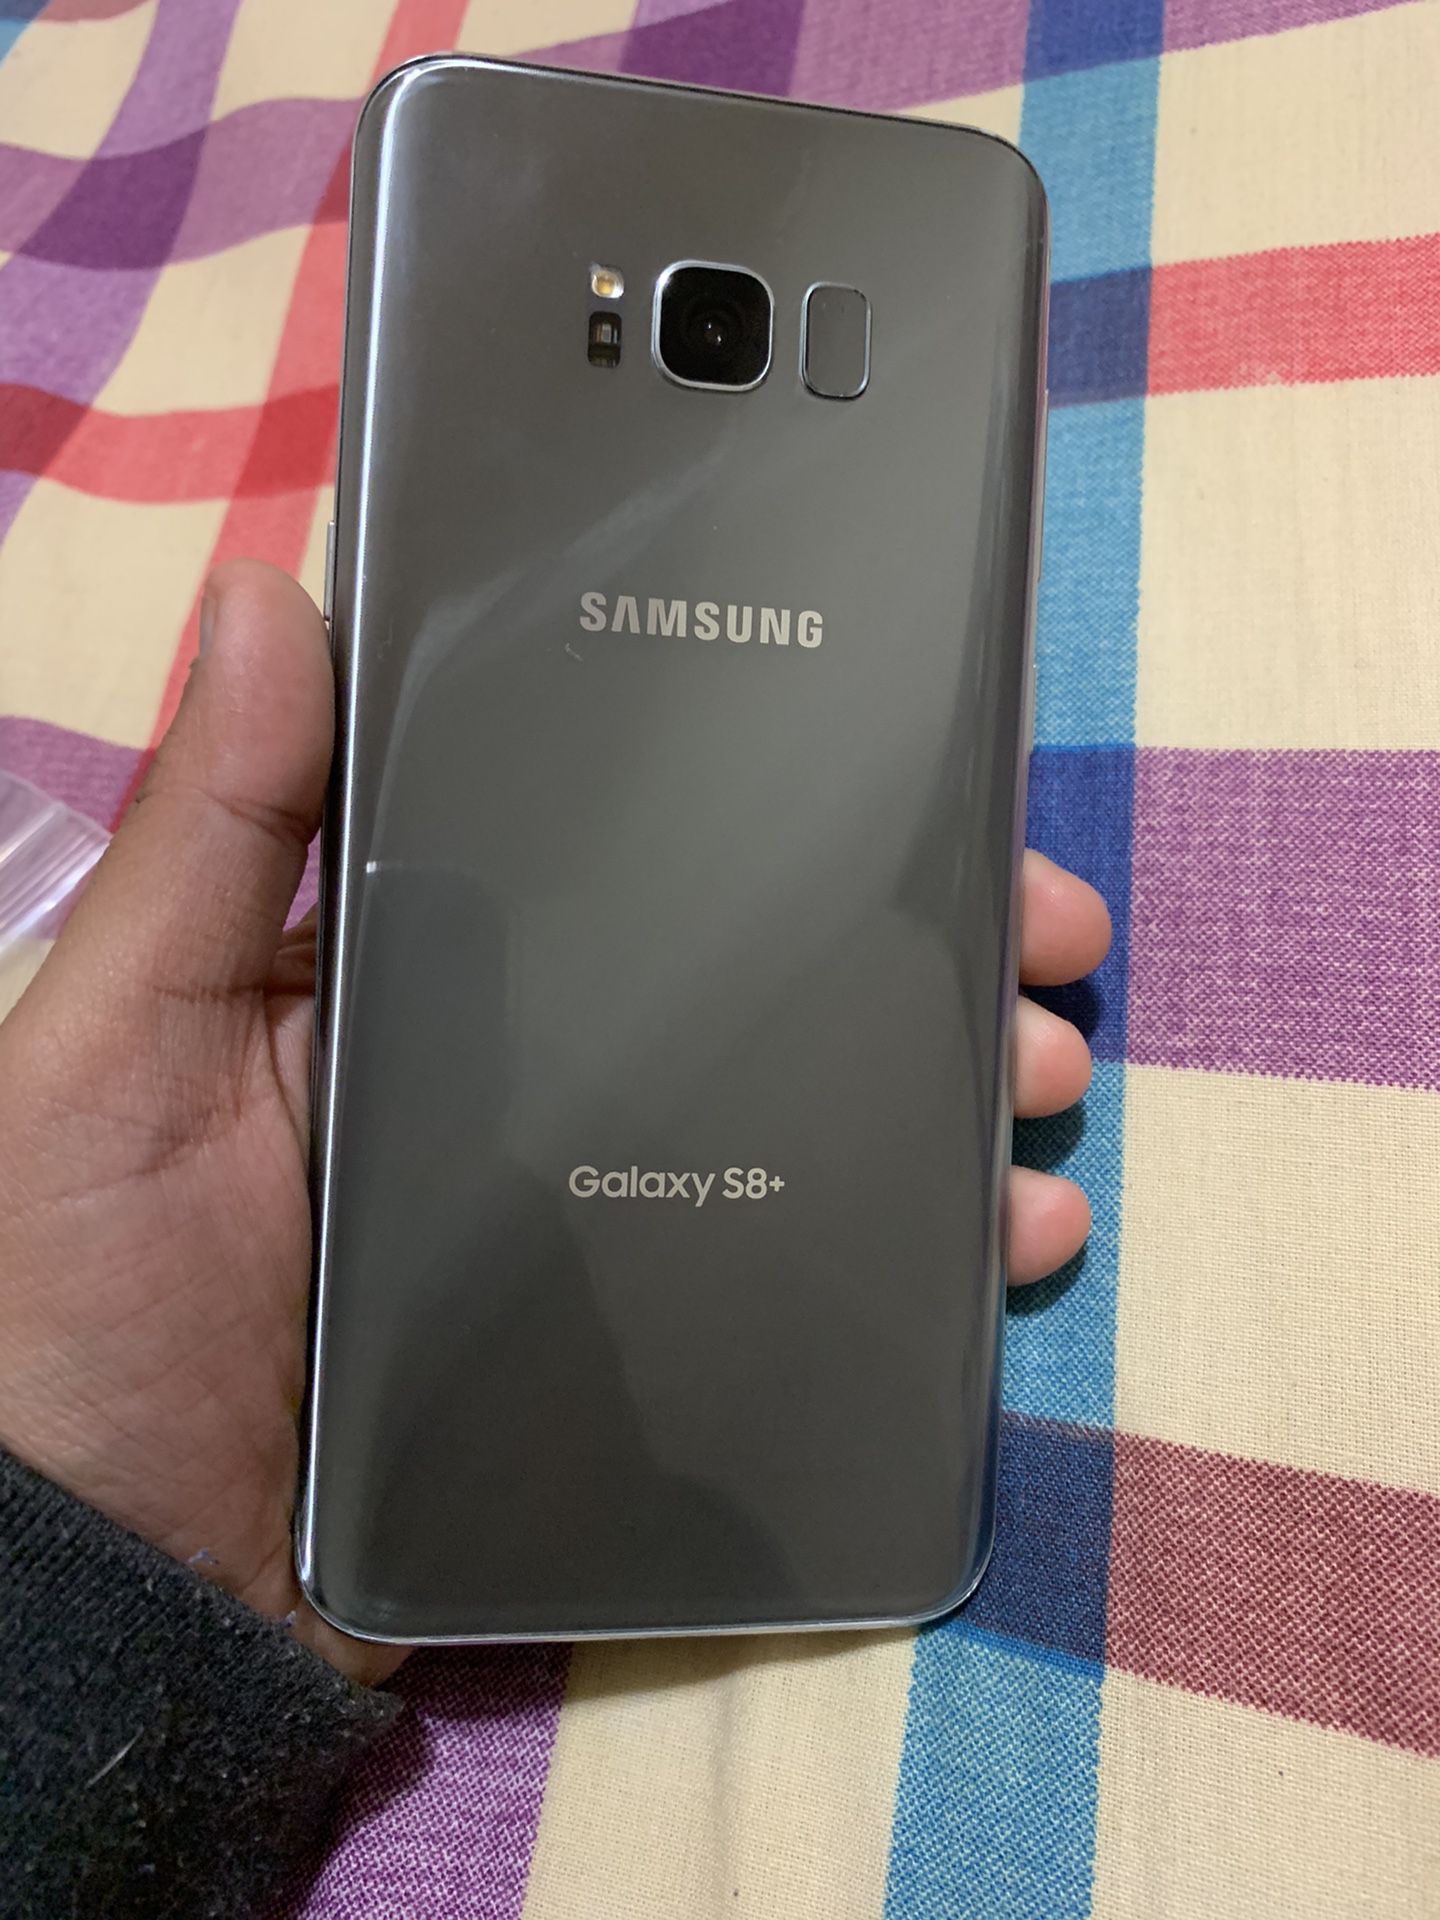 Samsung galaxy S8+ unlocked